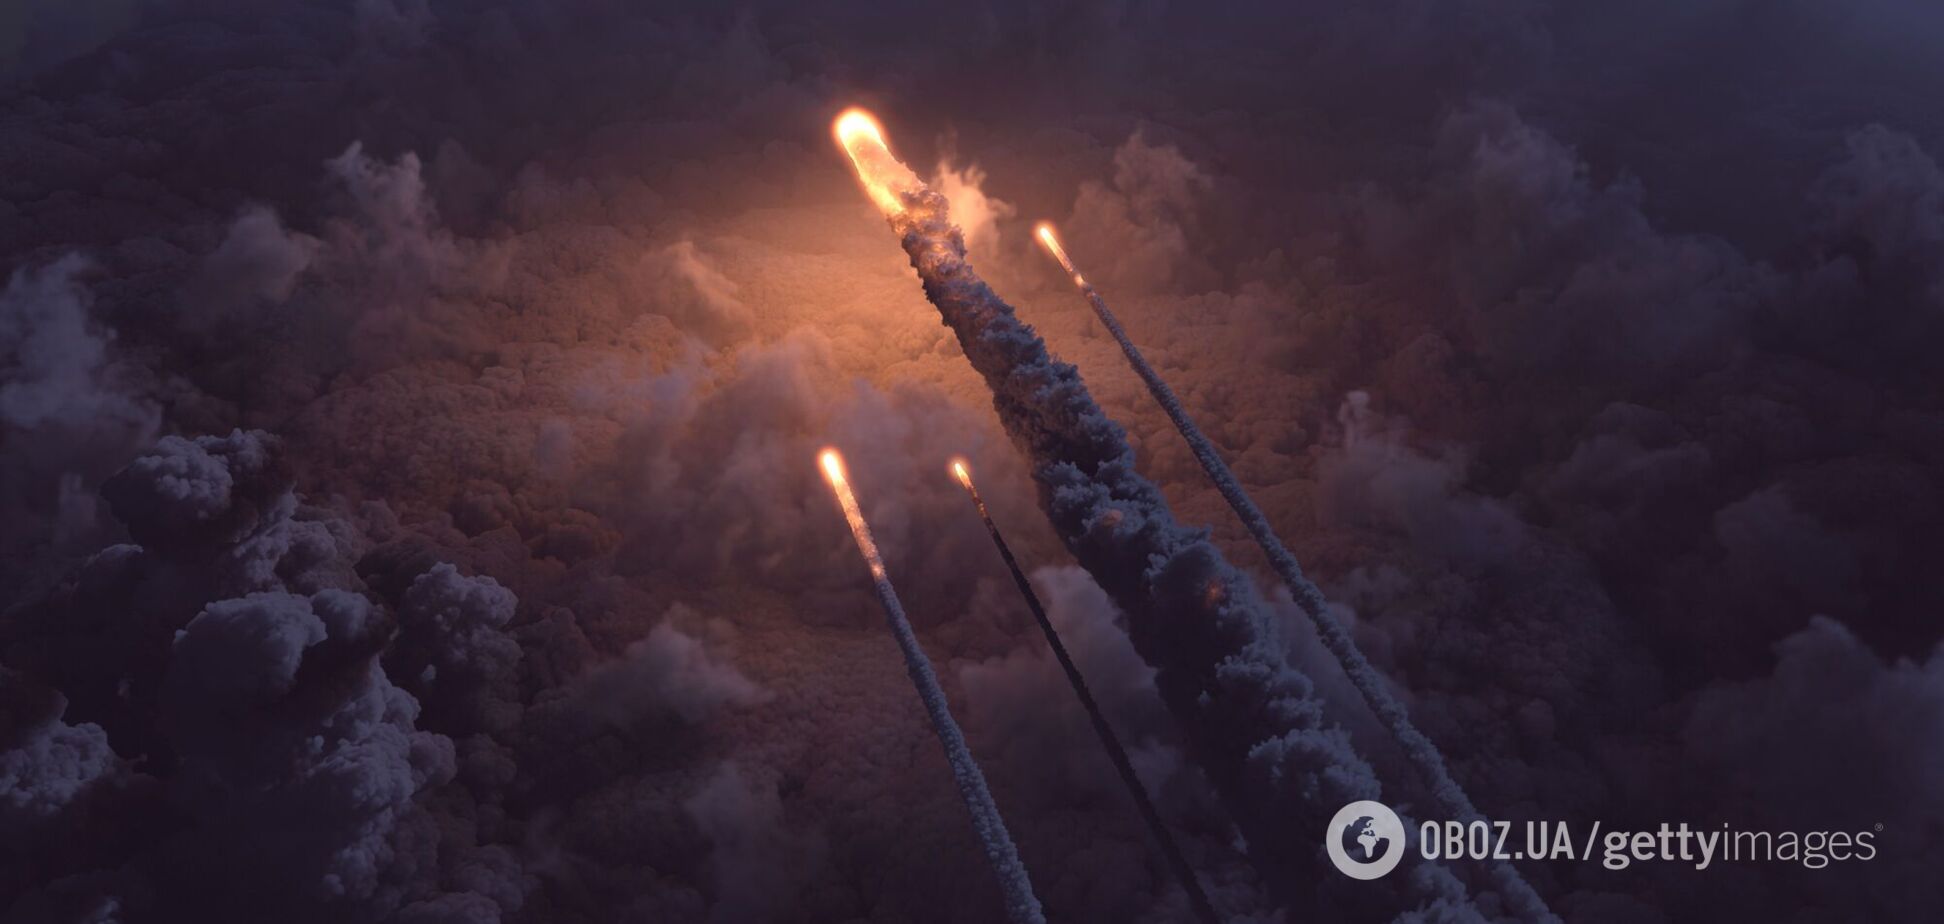 Под ударом была энергетика: какие ракеты запускала Россия по Украине 8 мая и по каким регионам целились